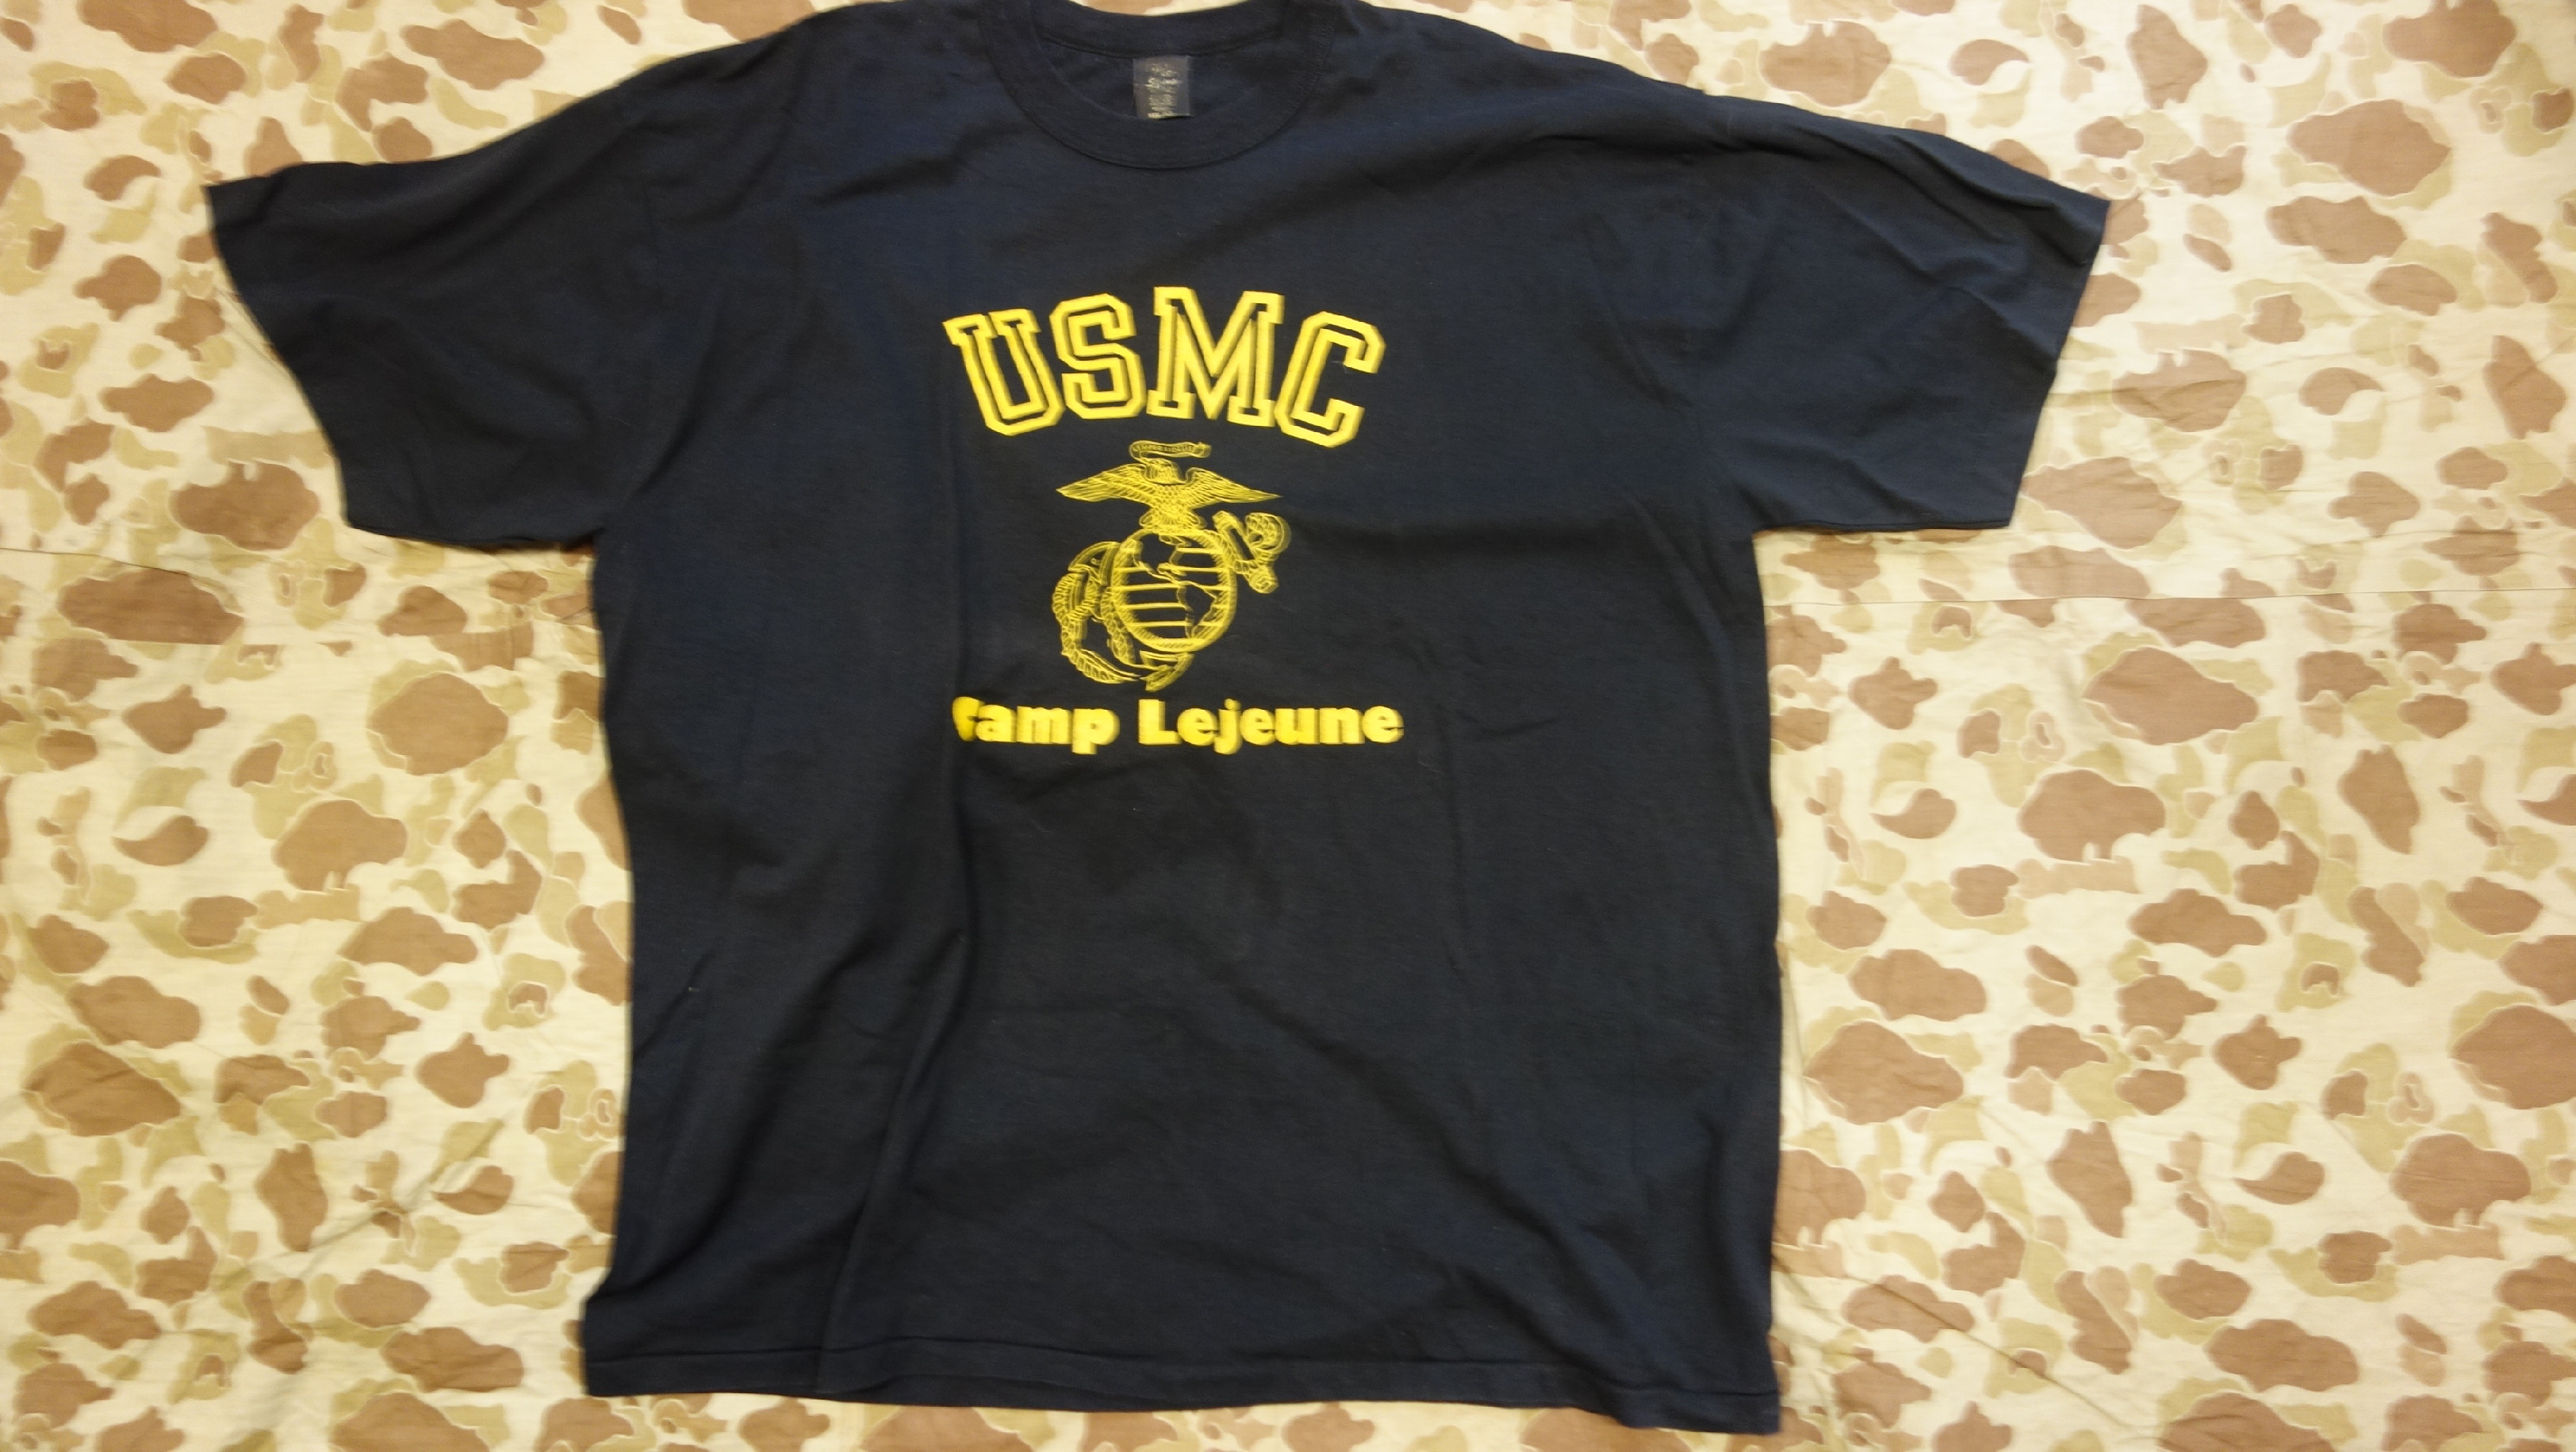 Tričko USMC Modré - XXXL (52)